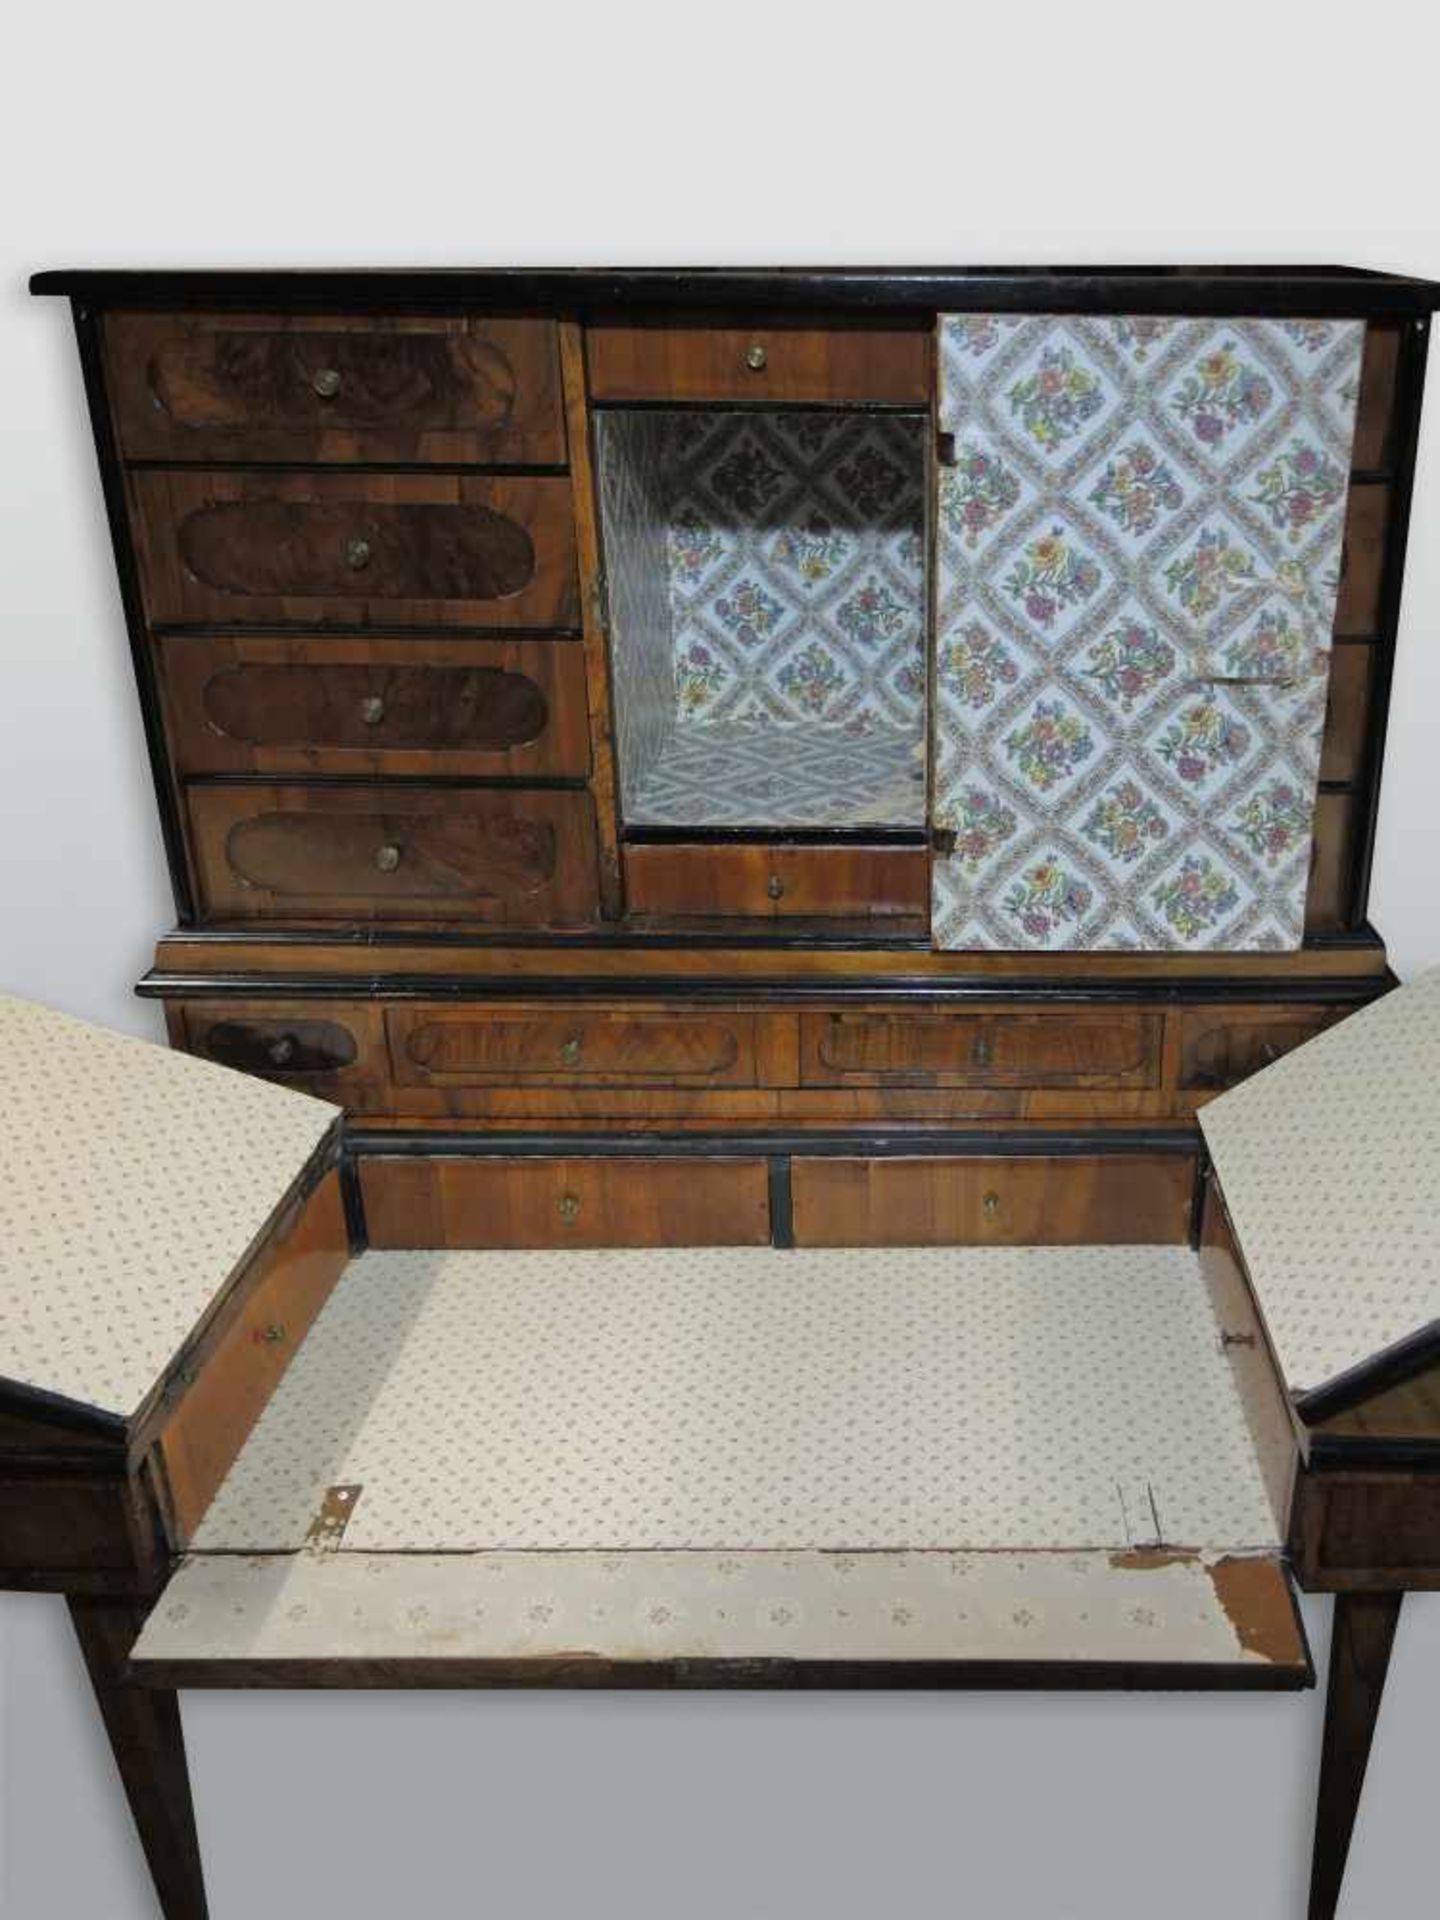 Aufsatz-Schreibmöbel mit TabernakelNussbaum-Untergestell. Aufsatz um 1820, Untergestell um 1860. - Bild 2 aus 3